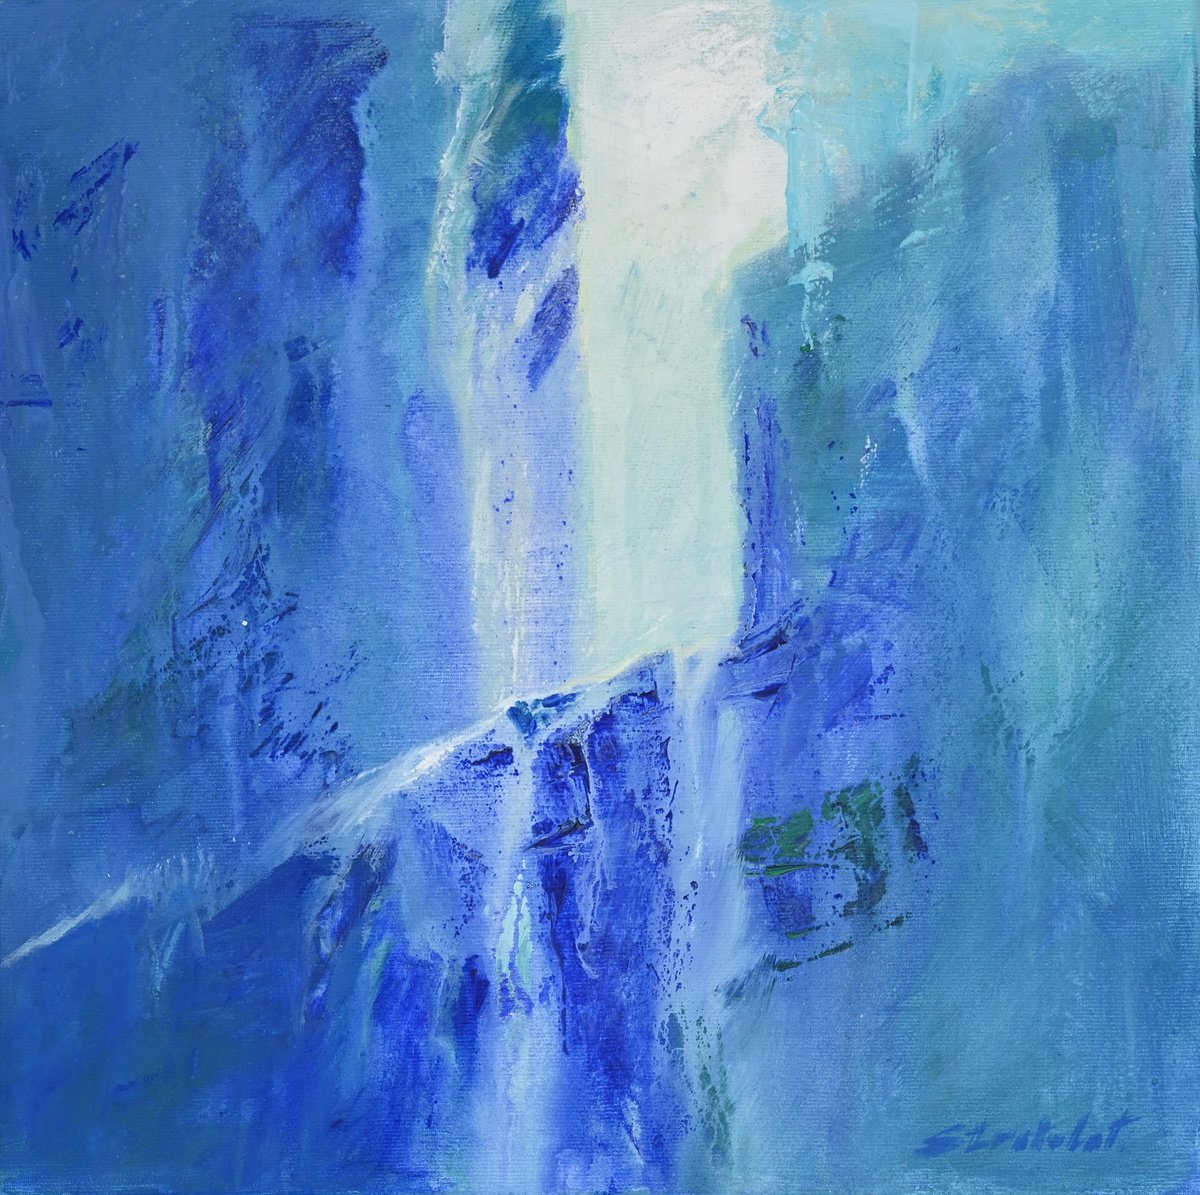 Swiss waterfalls by Teodor Stratulat